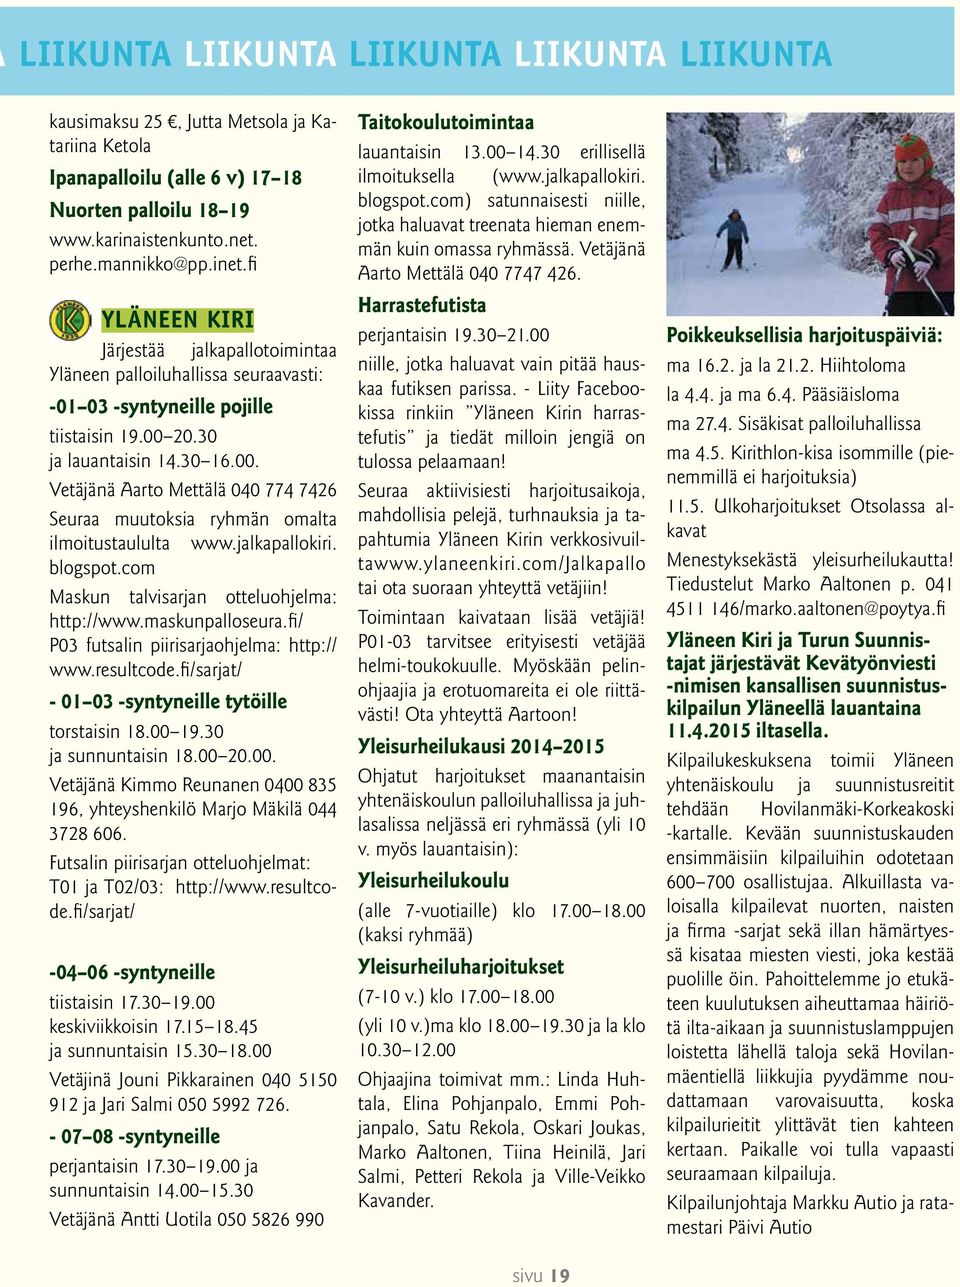 20.30 ja lauantaisin 14.30 16.00. Vetäjänä Aarto Mettälä 040 774 7426 Seuraa muutoksia ryhmän omalta ilmoitustaululta www.jalkapallokiri. blogspot.com Maskun talvisarjan otteluohjelma: http://www.